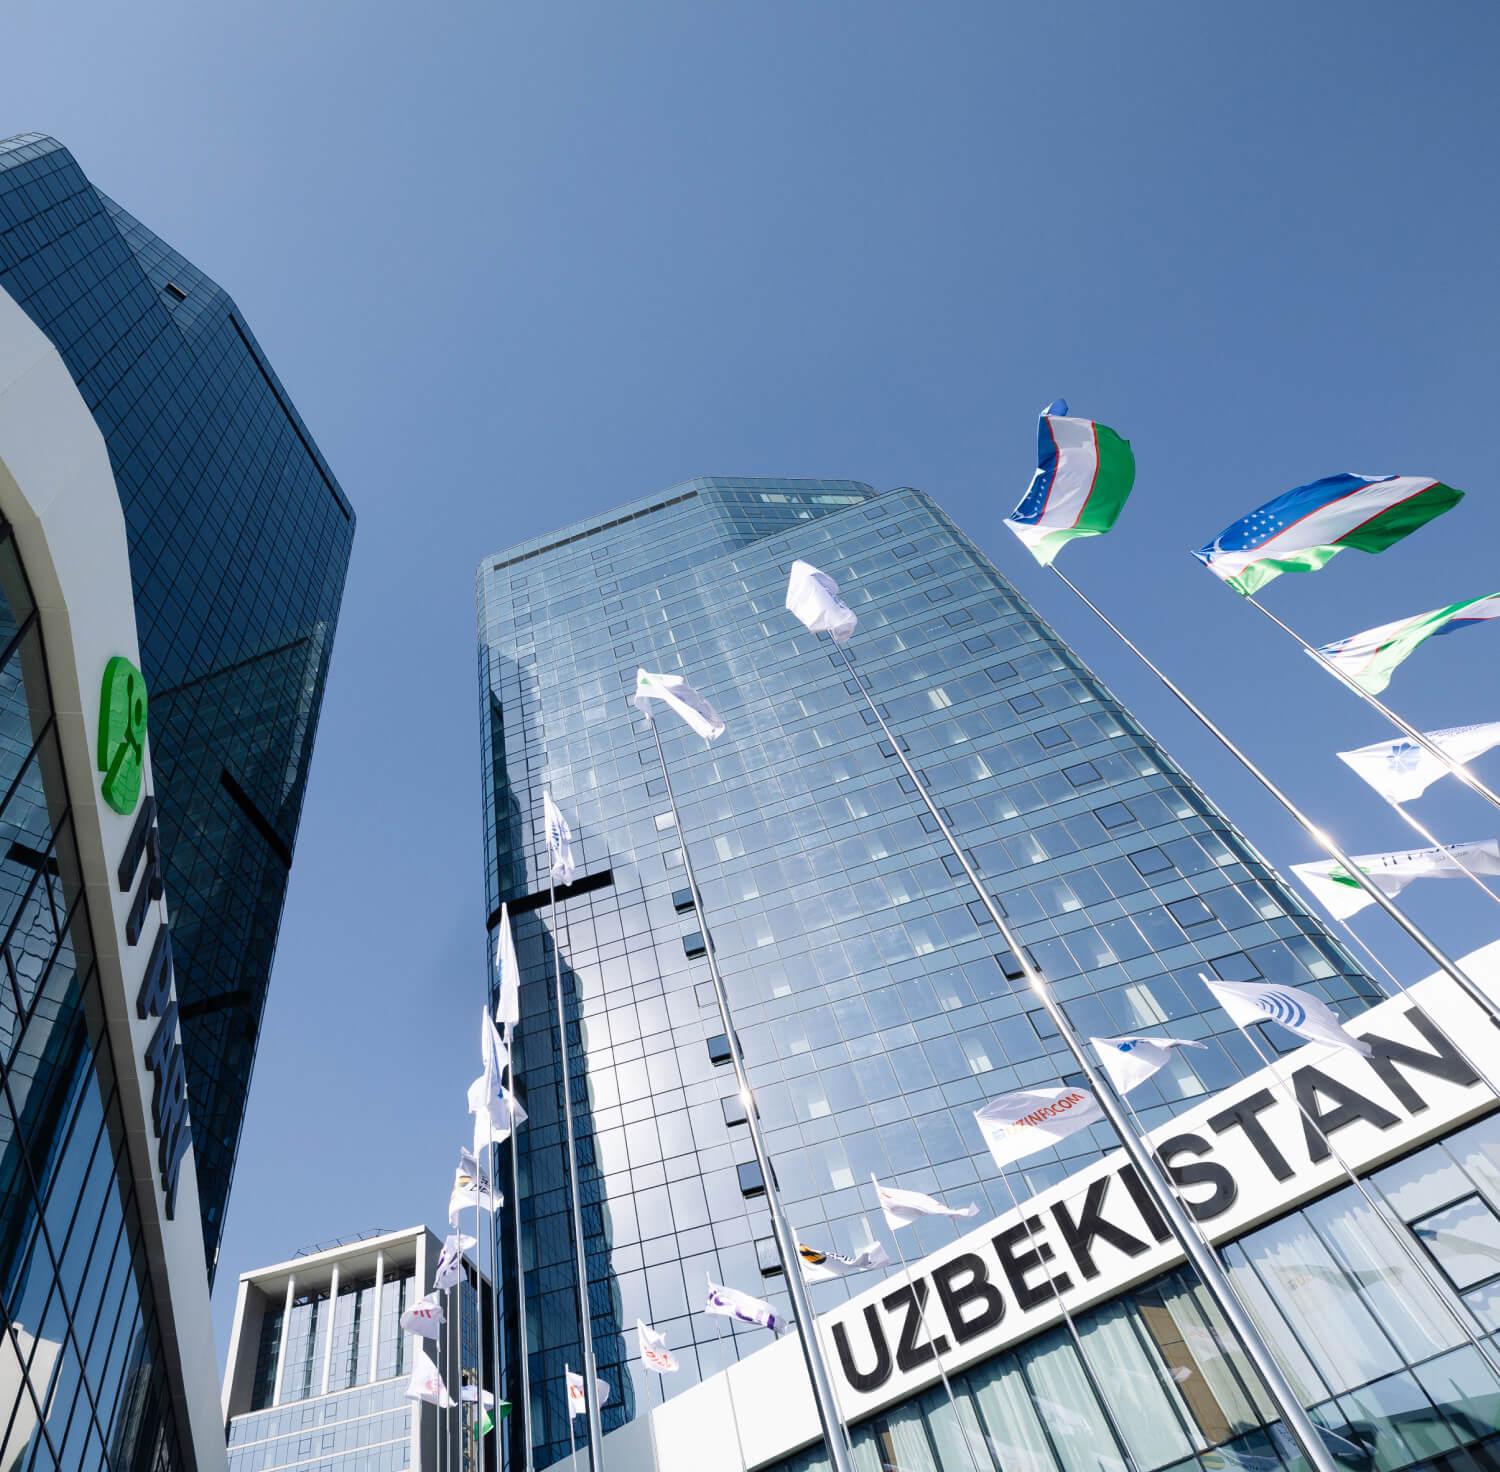 Uzbekistan - the new outsourcing hub